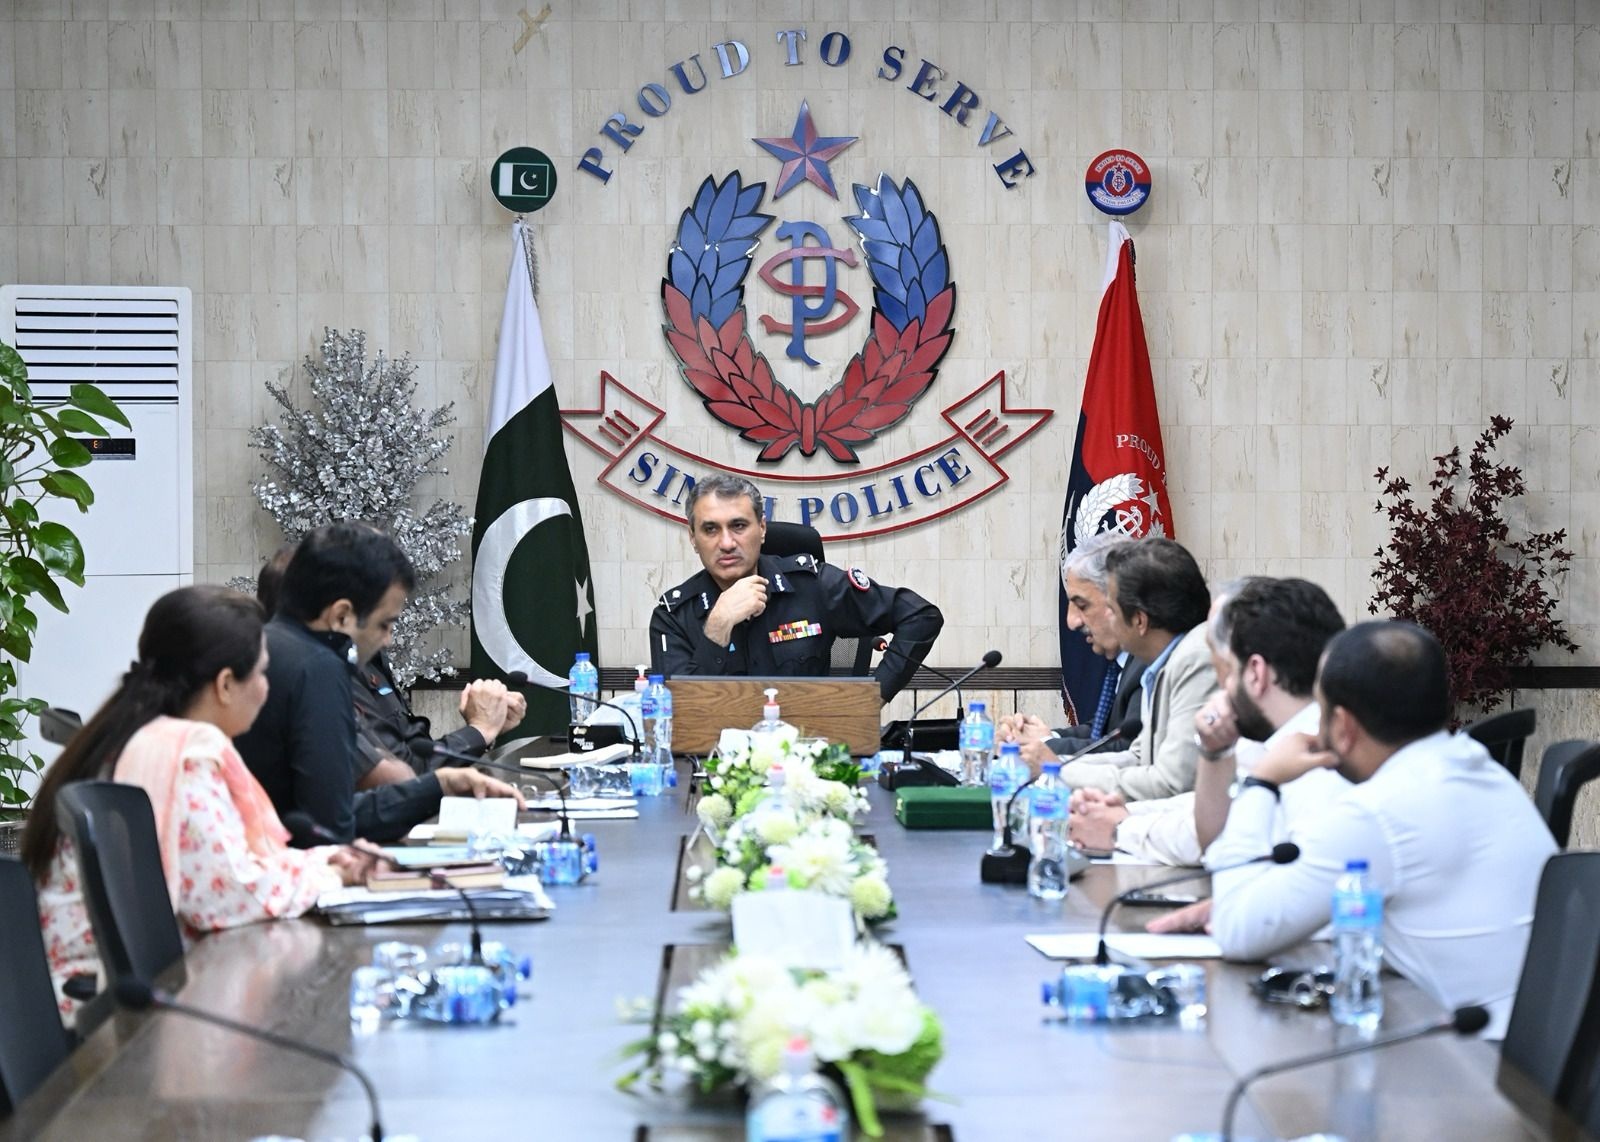 آئی جی سندھ سے آل پاکستان سیکیورٹی ایجینسیز کے 06 رکنی وفد کی صدر میجر ریٹائرڈ منیر کی سربراہی میں ملاقات